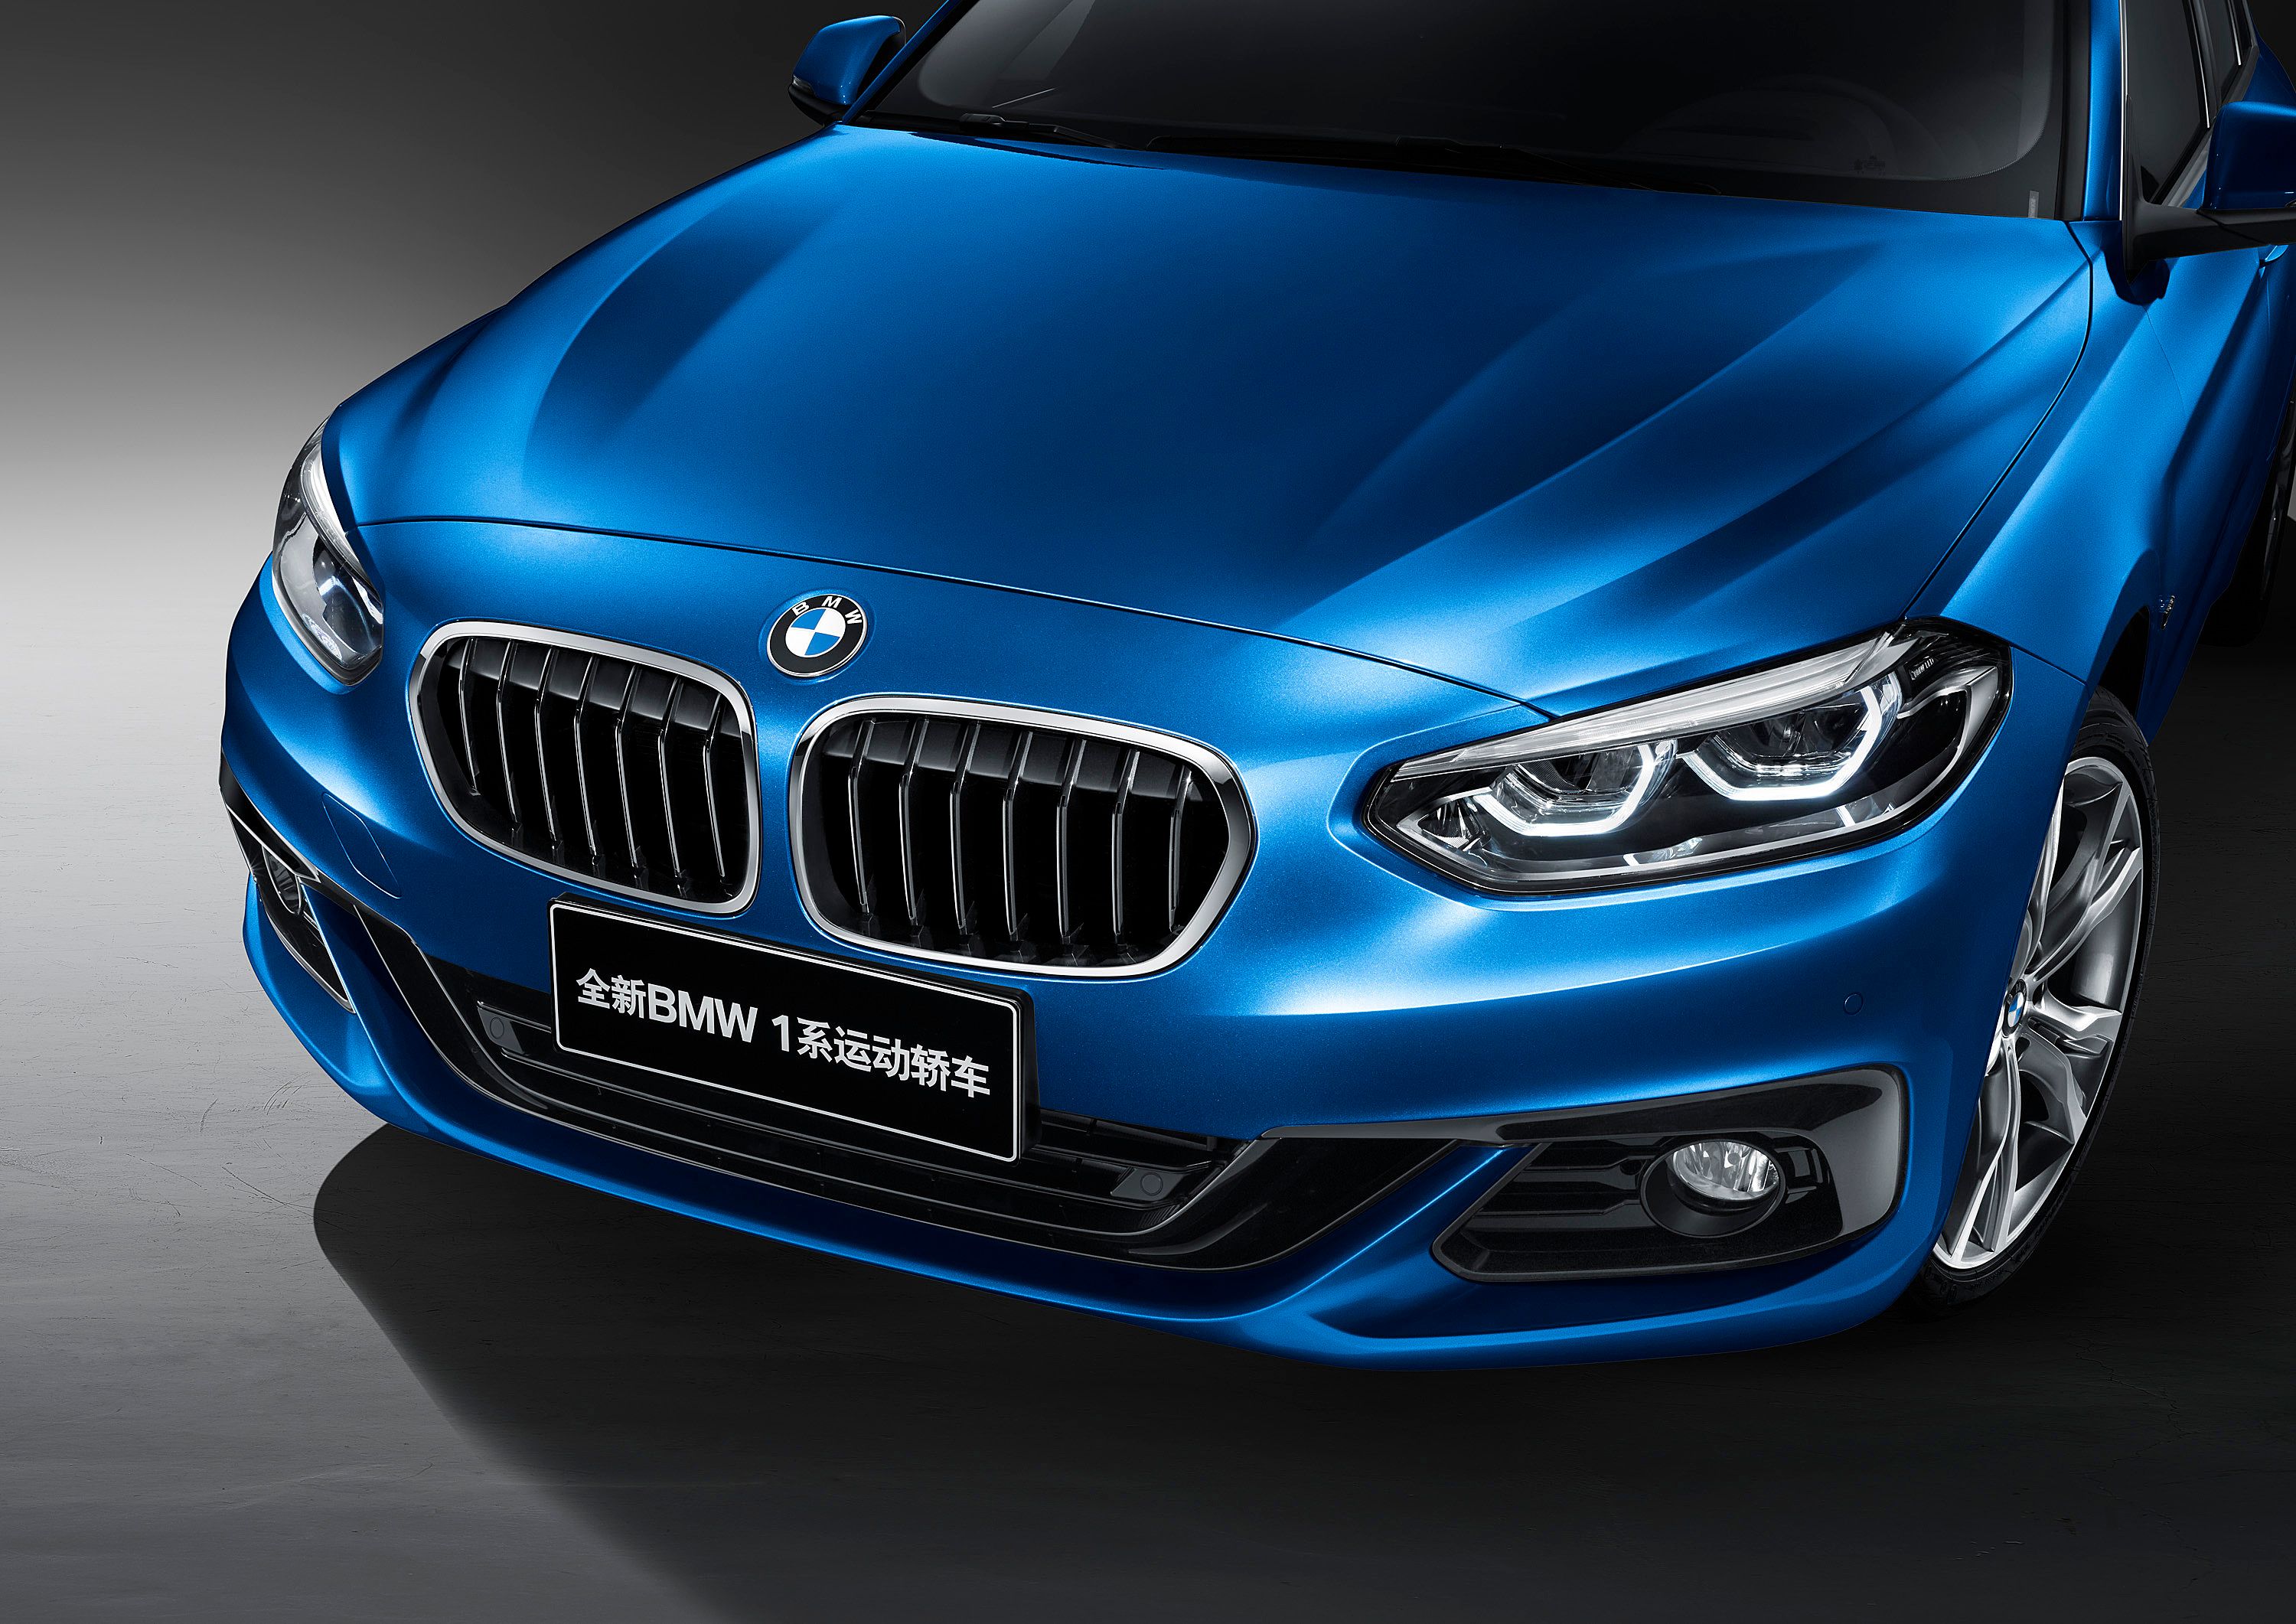 2017 BMW 1 Series Sedan